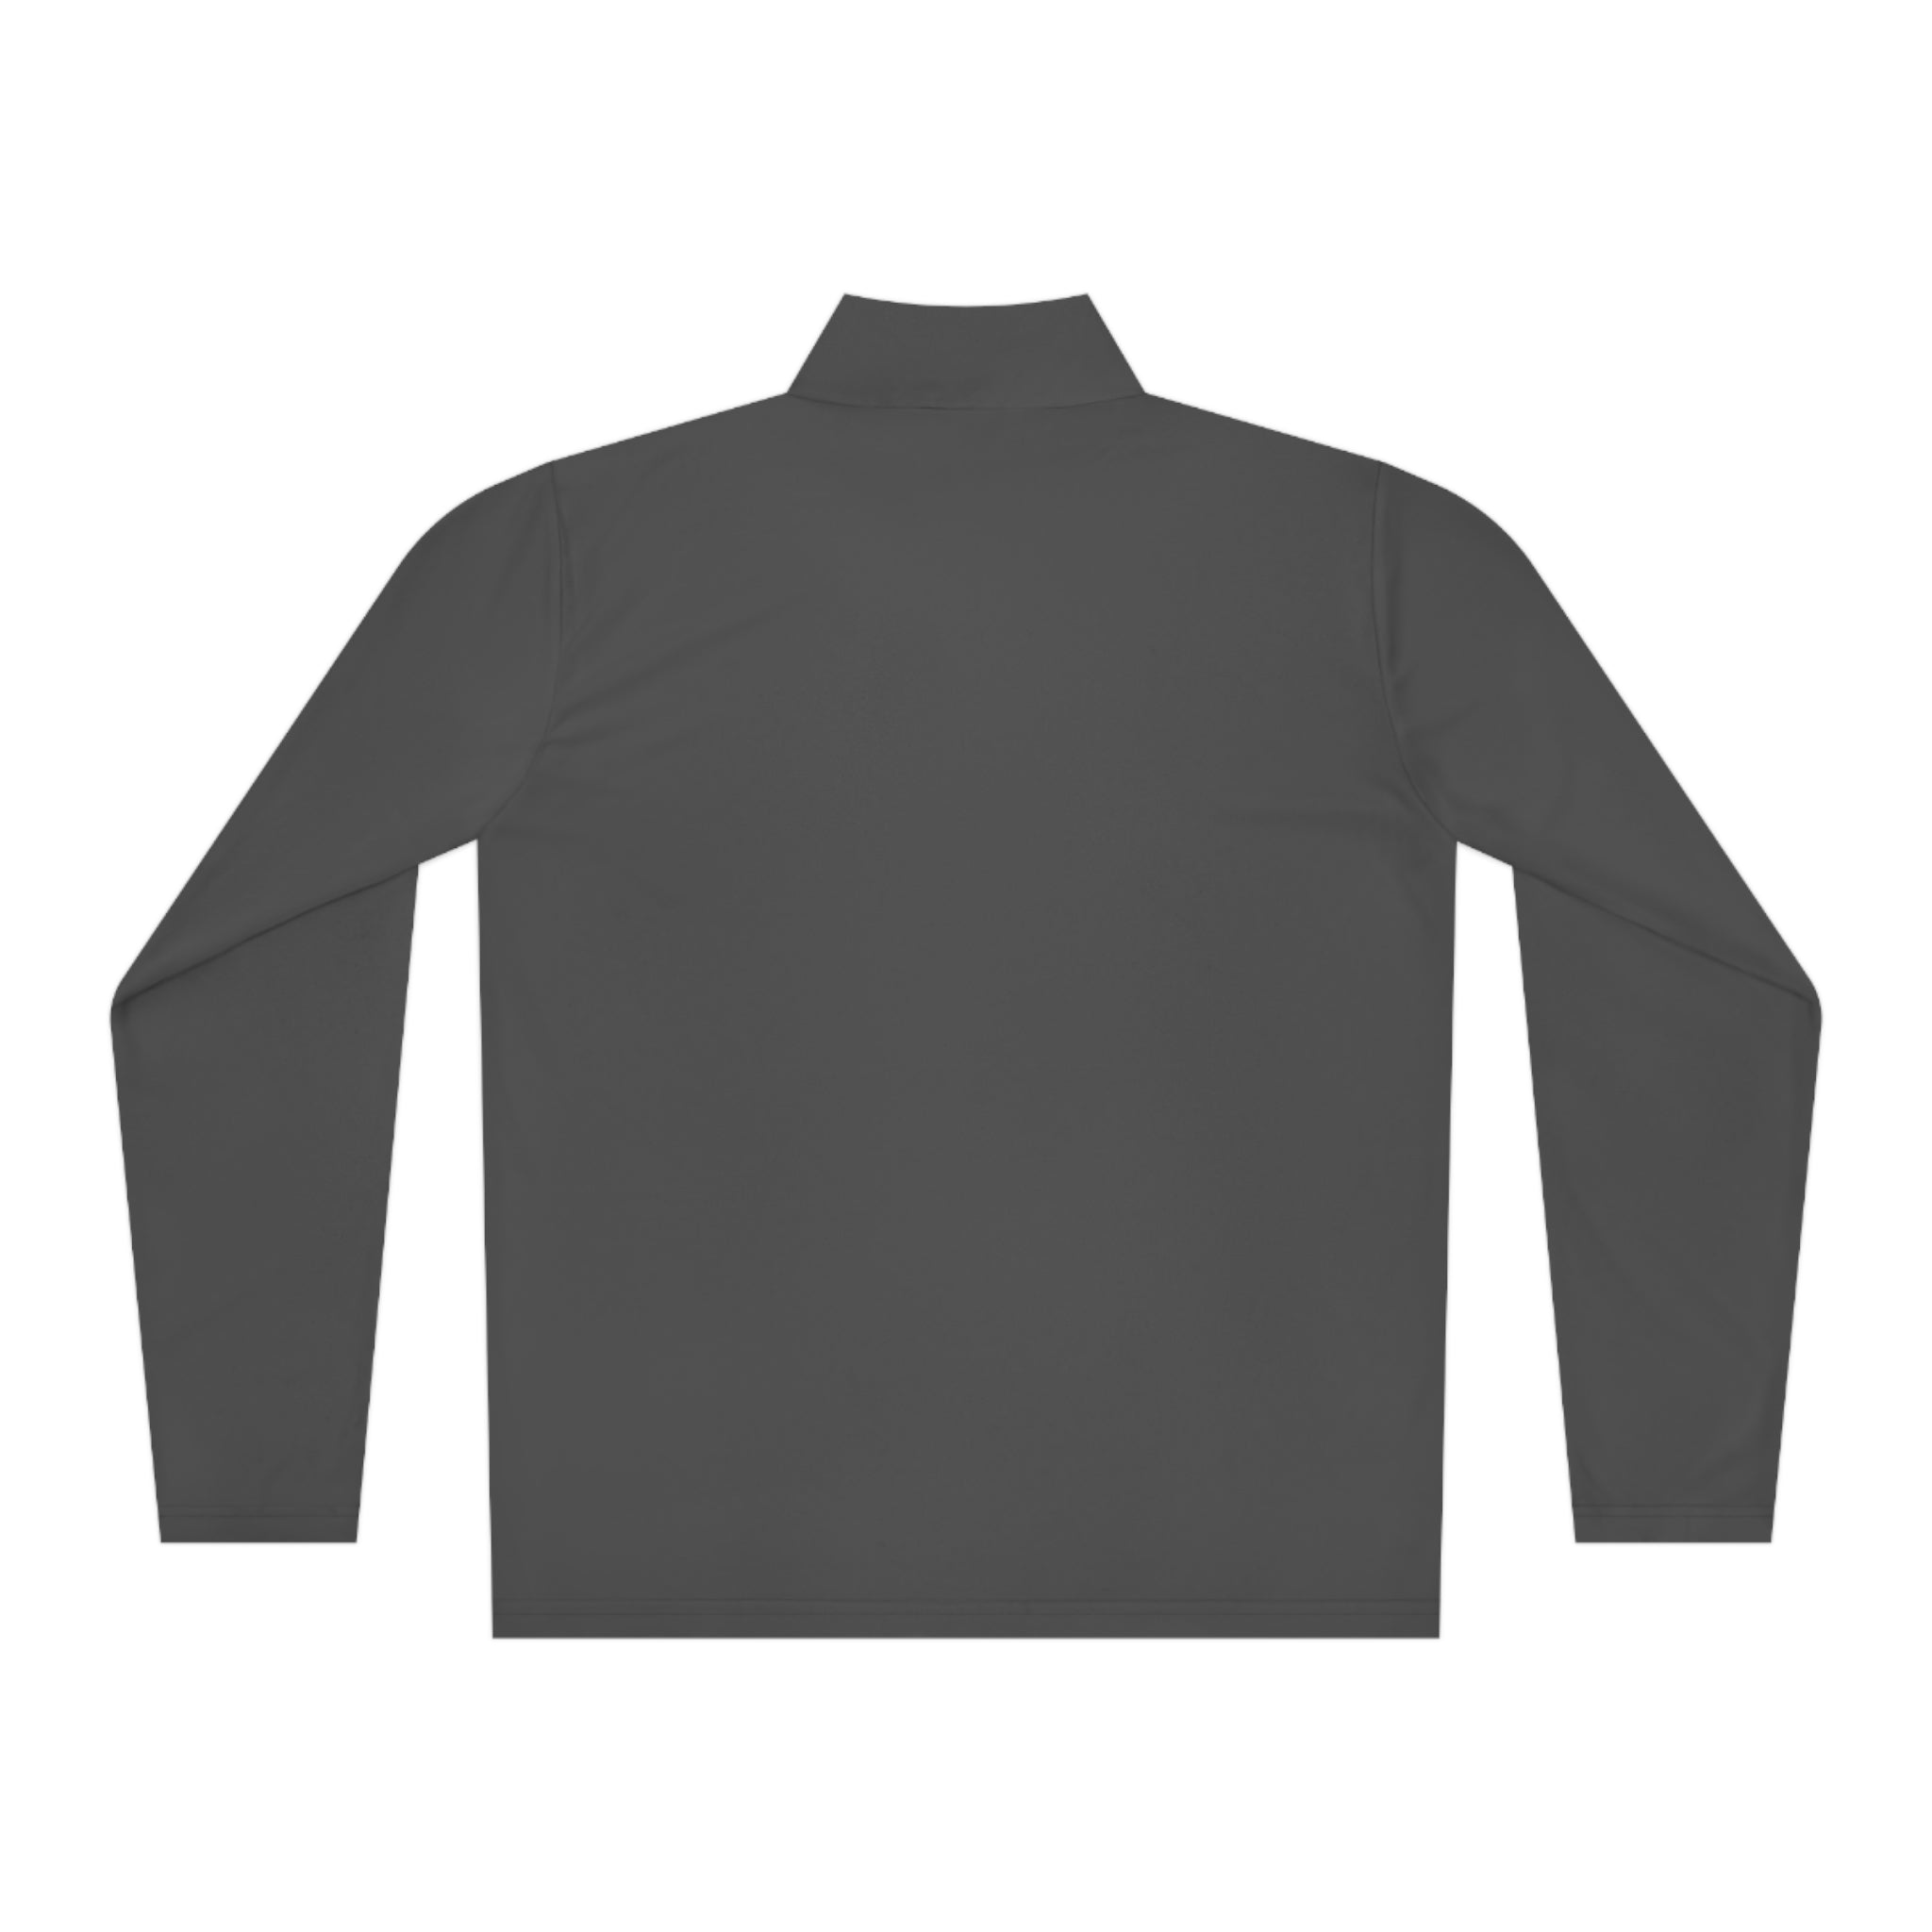 PPYQ® Original Unisex Quarter-Zip Pullover